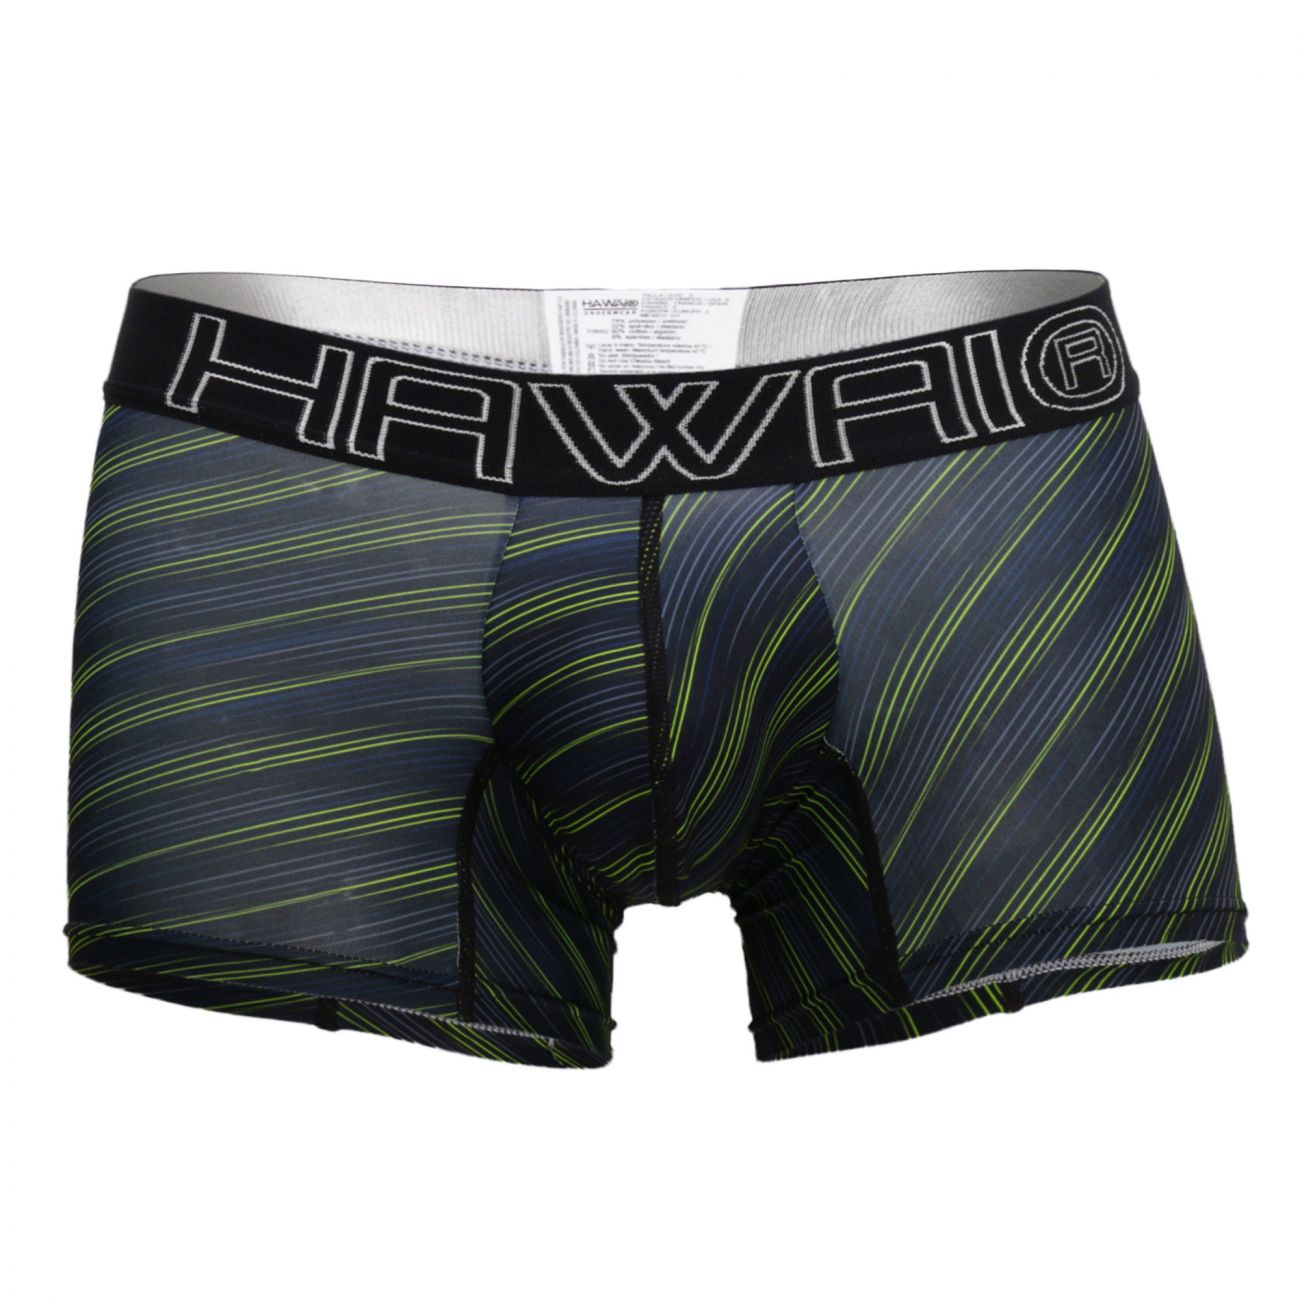 HAWAI 41921 Boxer Briefs Green